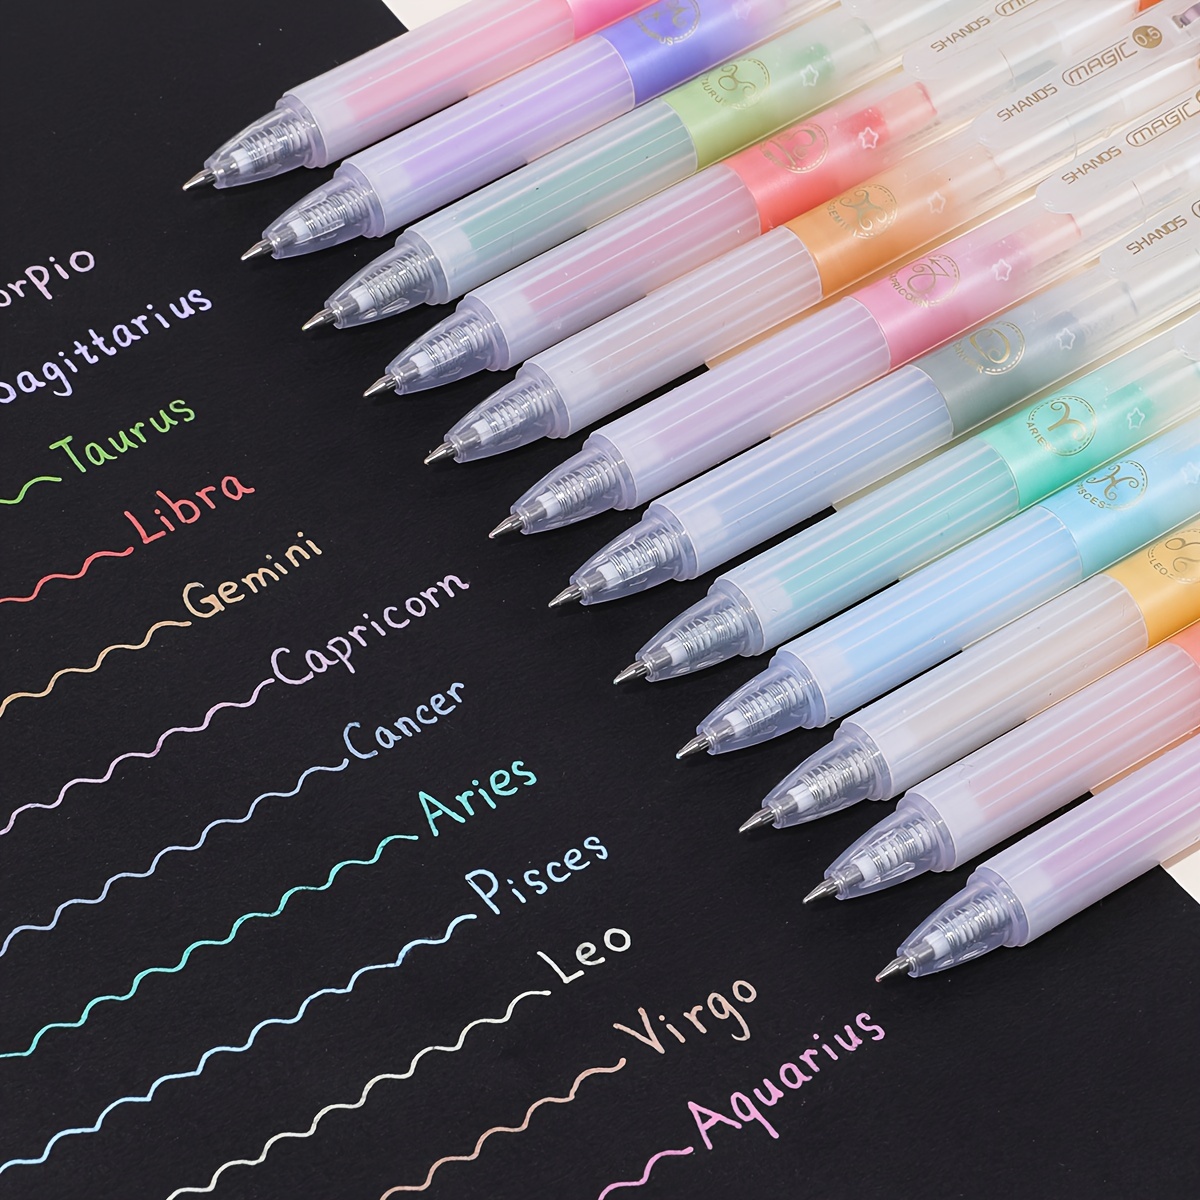 2 color click pens - magical